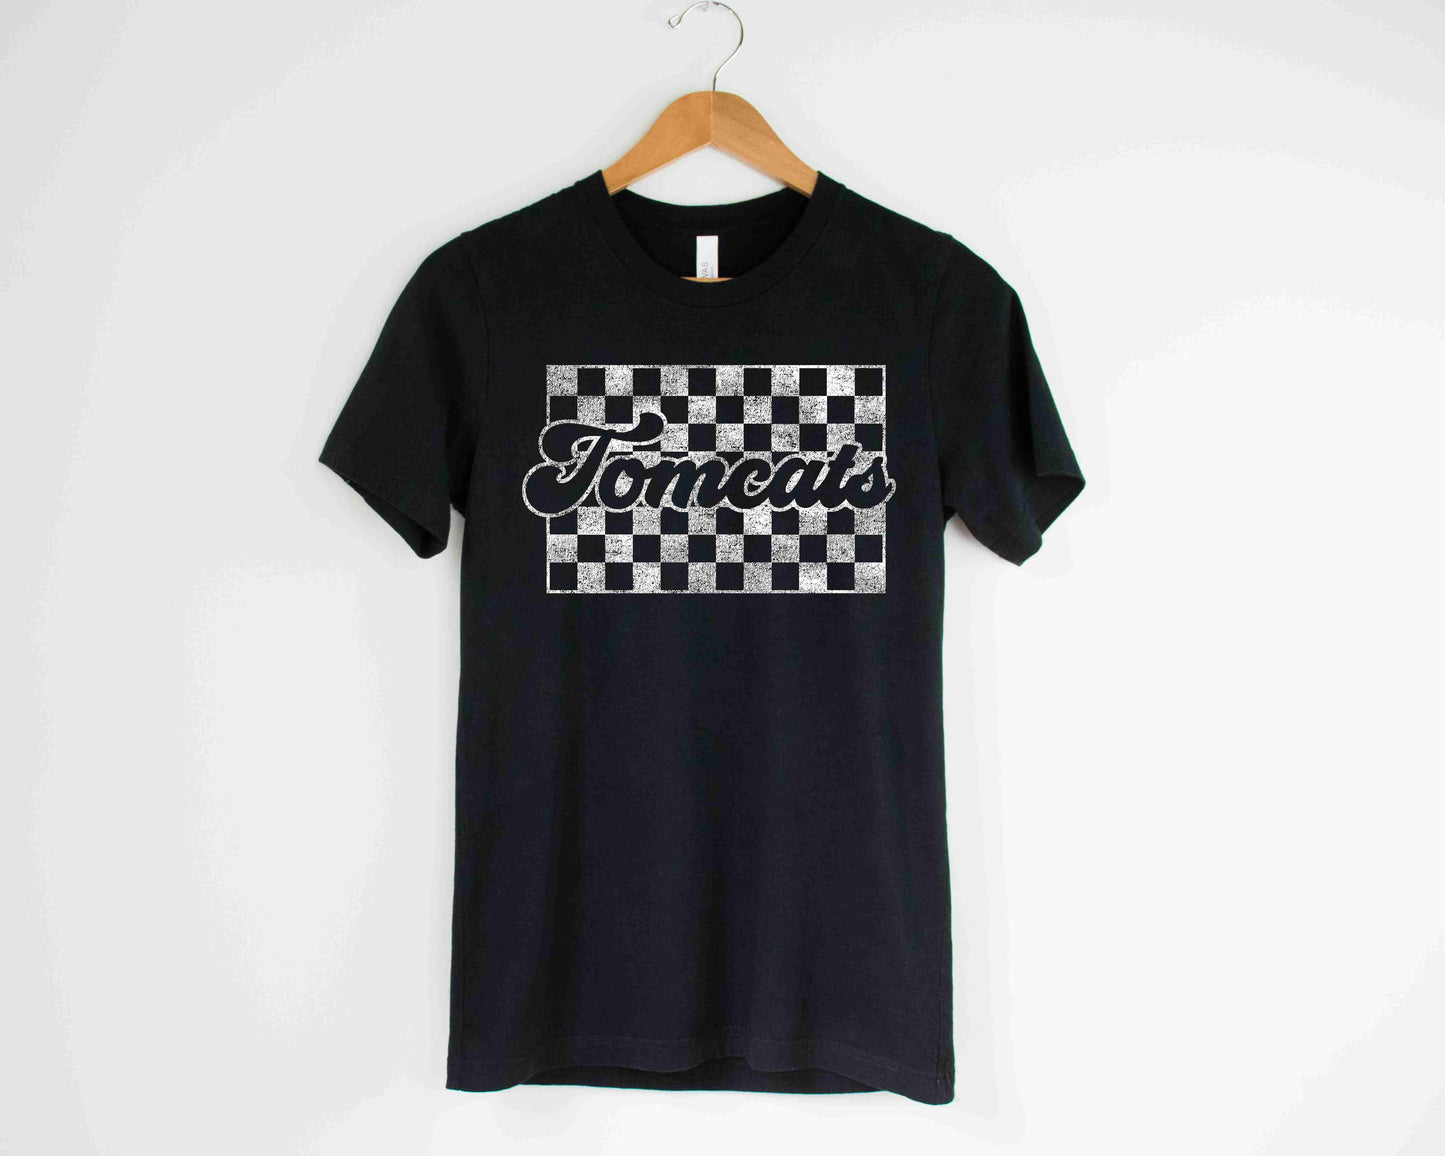 Tomcats Checkered T-Shirt